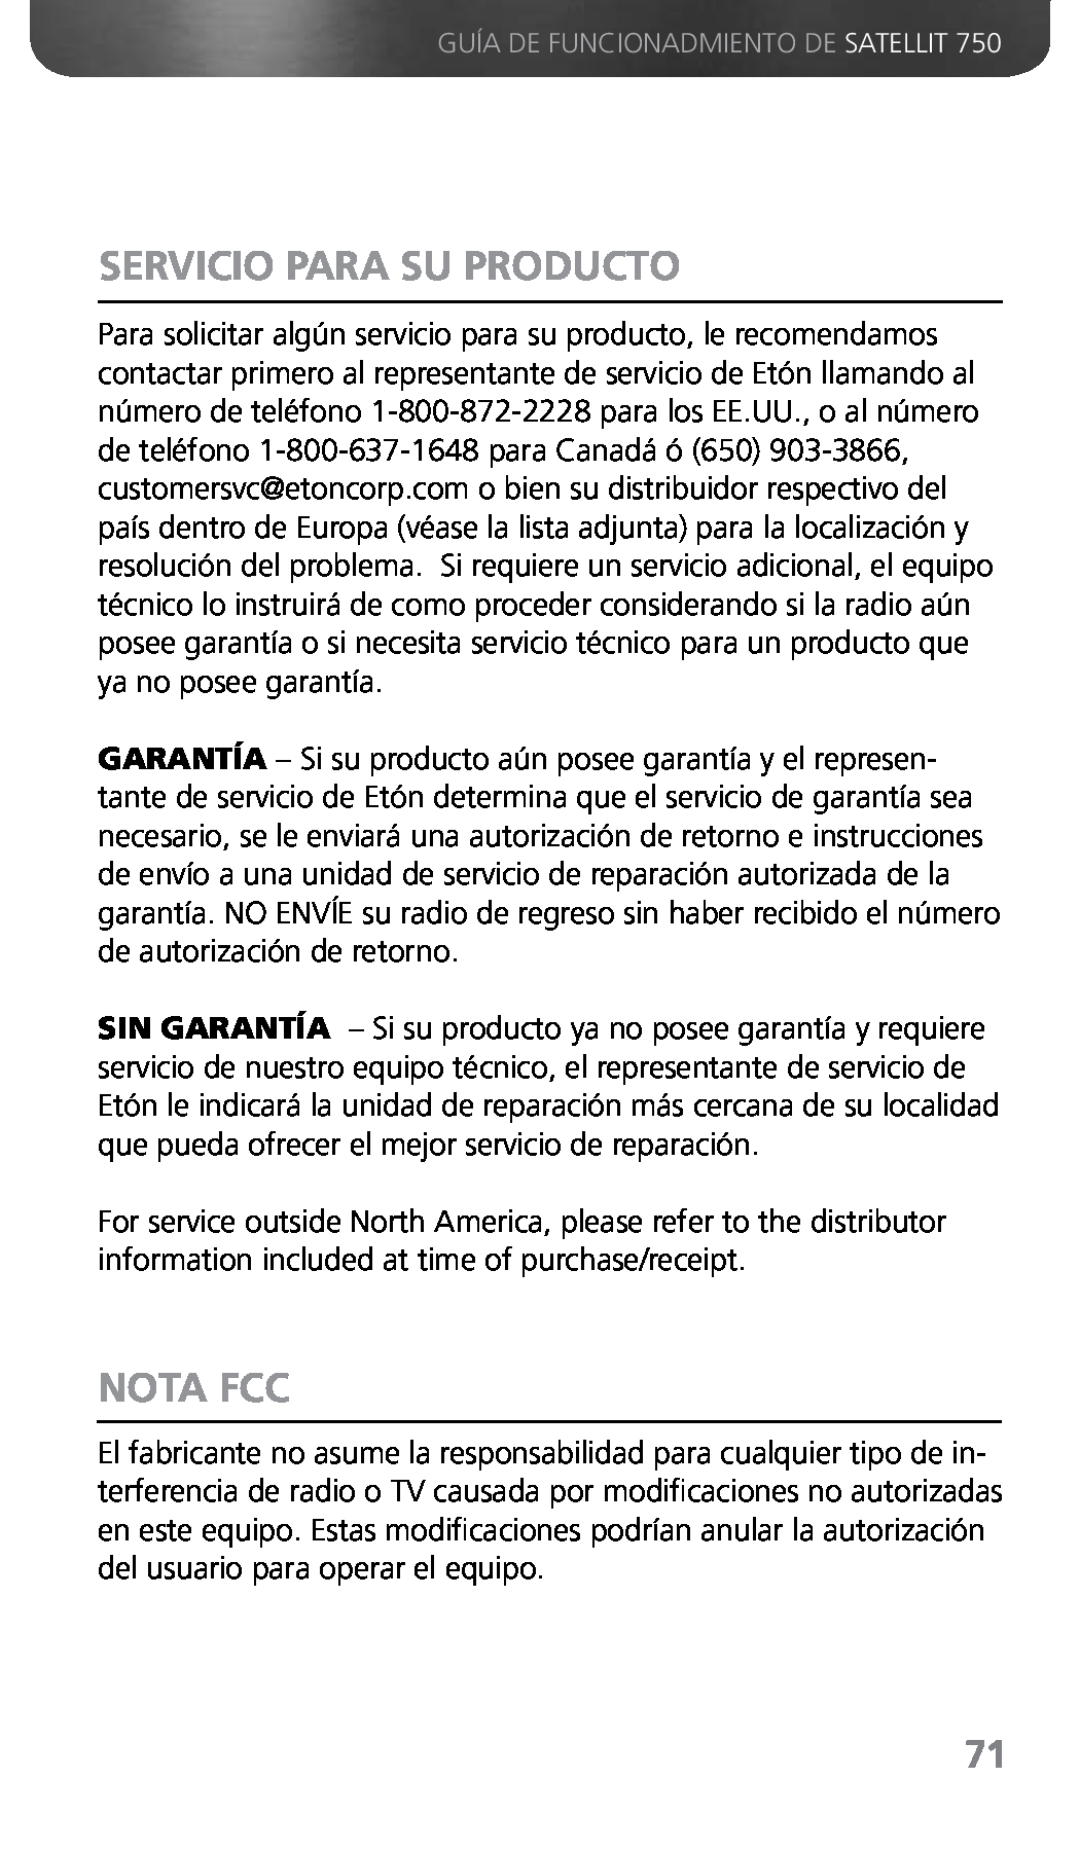 Grundig 750 owner manual Servicio Para Su Producto, Nota FCC 